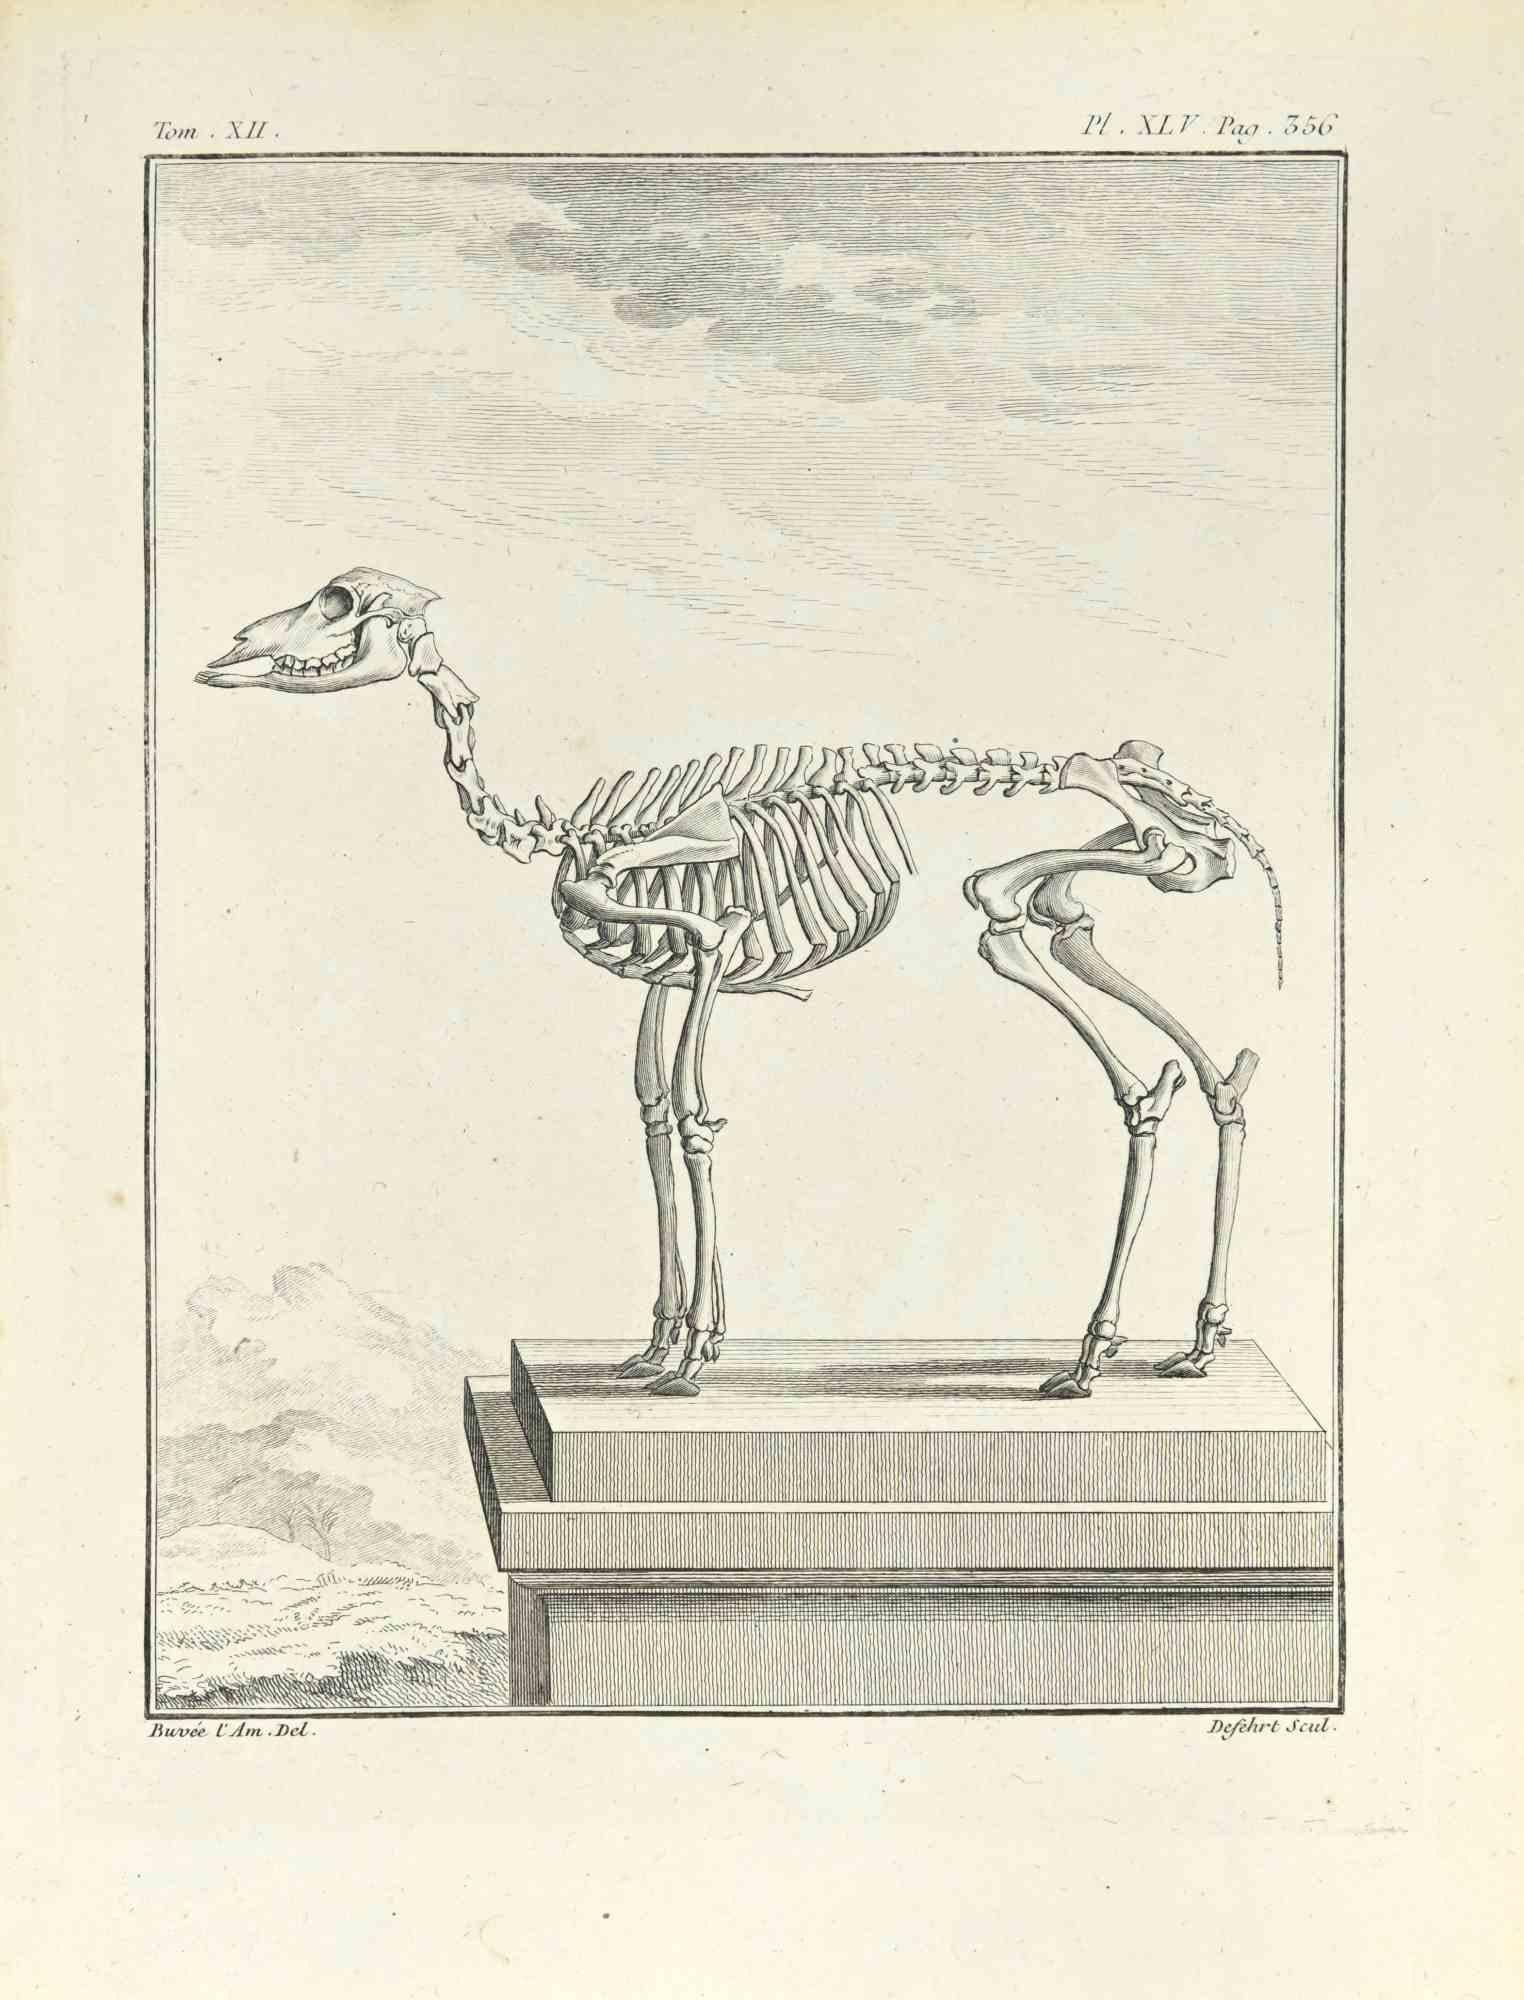 Le Squelette est une gravure réalisée par Antoine Defehrt en 1771.

Il appartient à la suite "Histoire naturelle, générale et particulière avec la description du Cabinet du Roi".

Signature de l'Artistics gravée en bas à droite.

Bonnes conditions